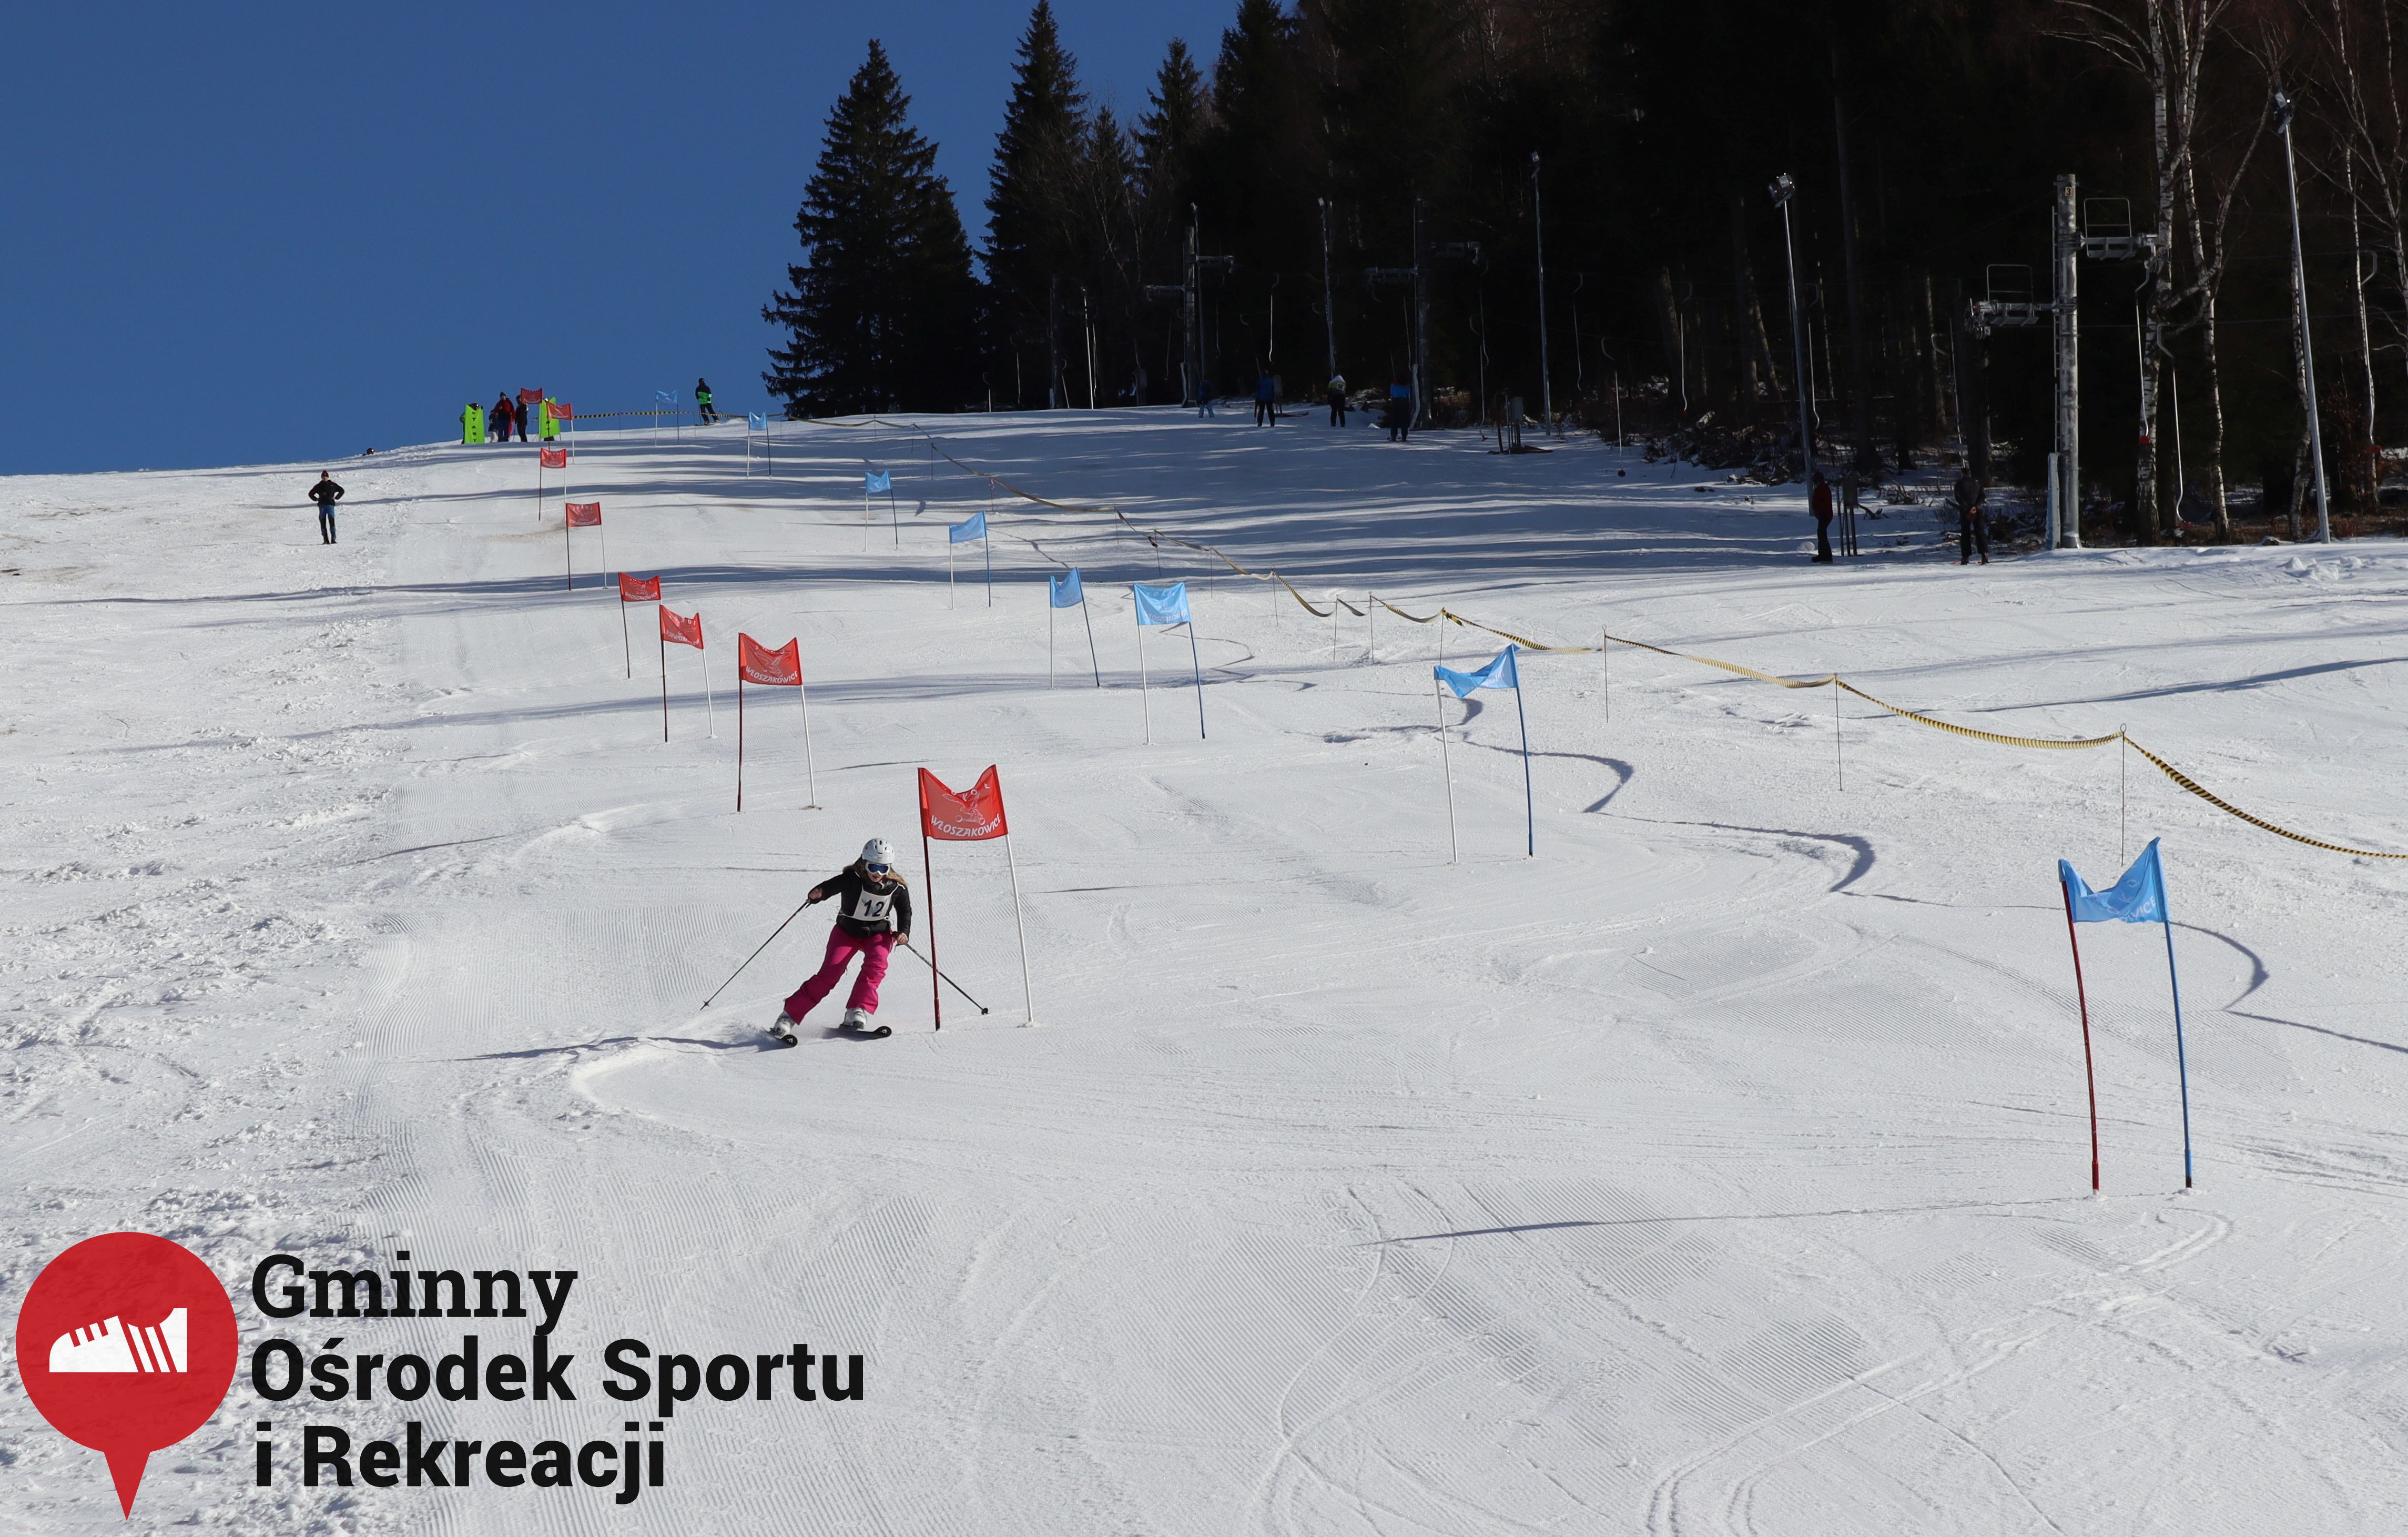 2022.02.12 - 18. Mistrzostwa Gminy Woszakowice w narciarstwie088.jpg - 1,63 MB